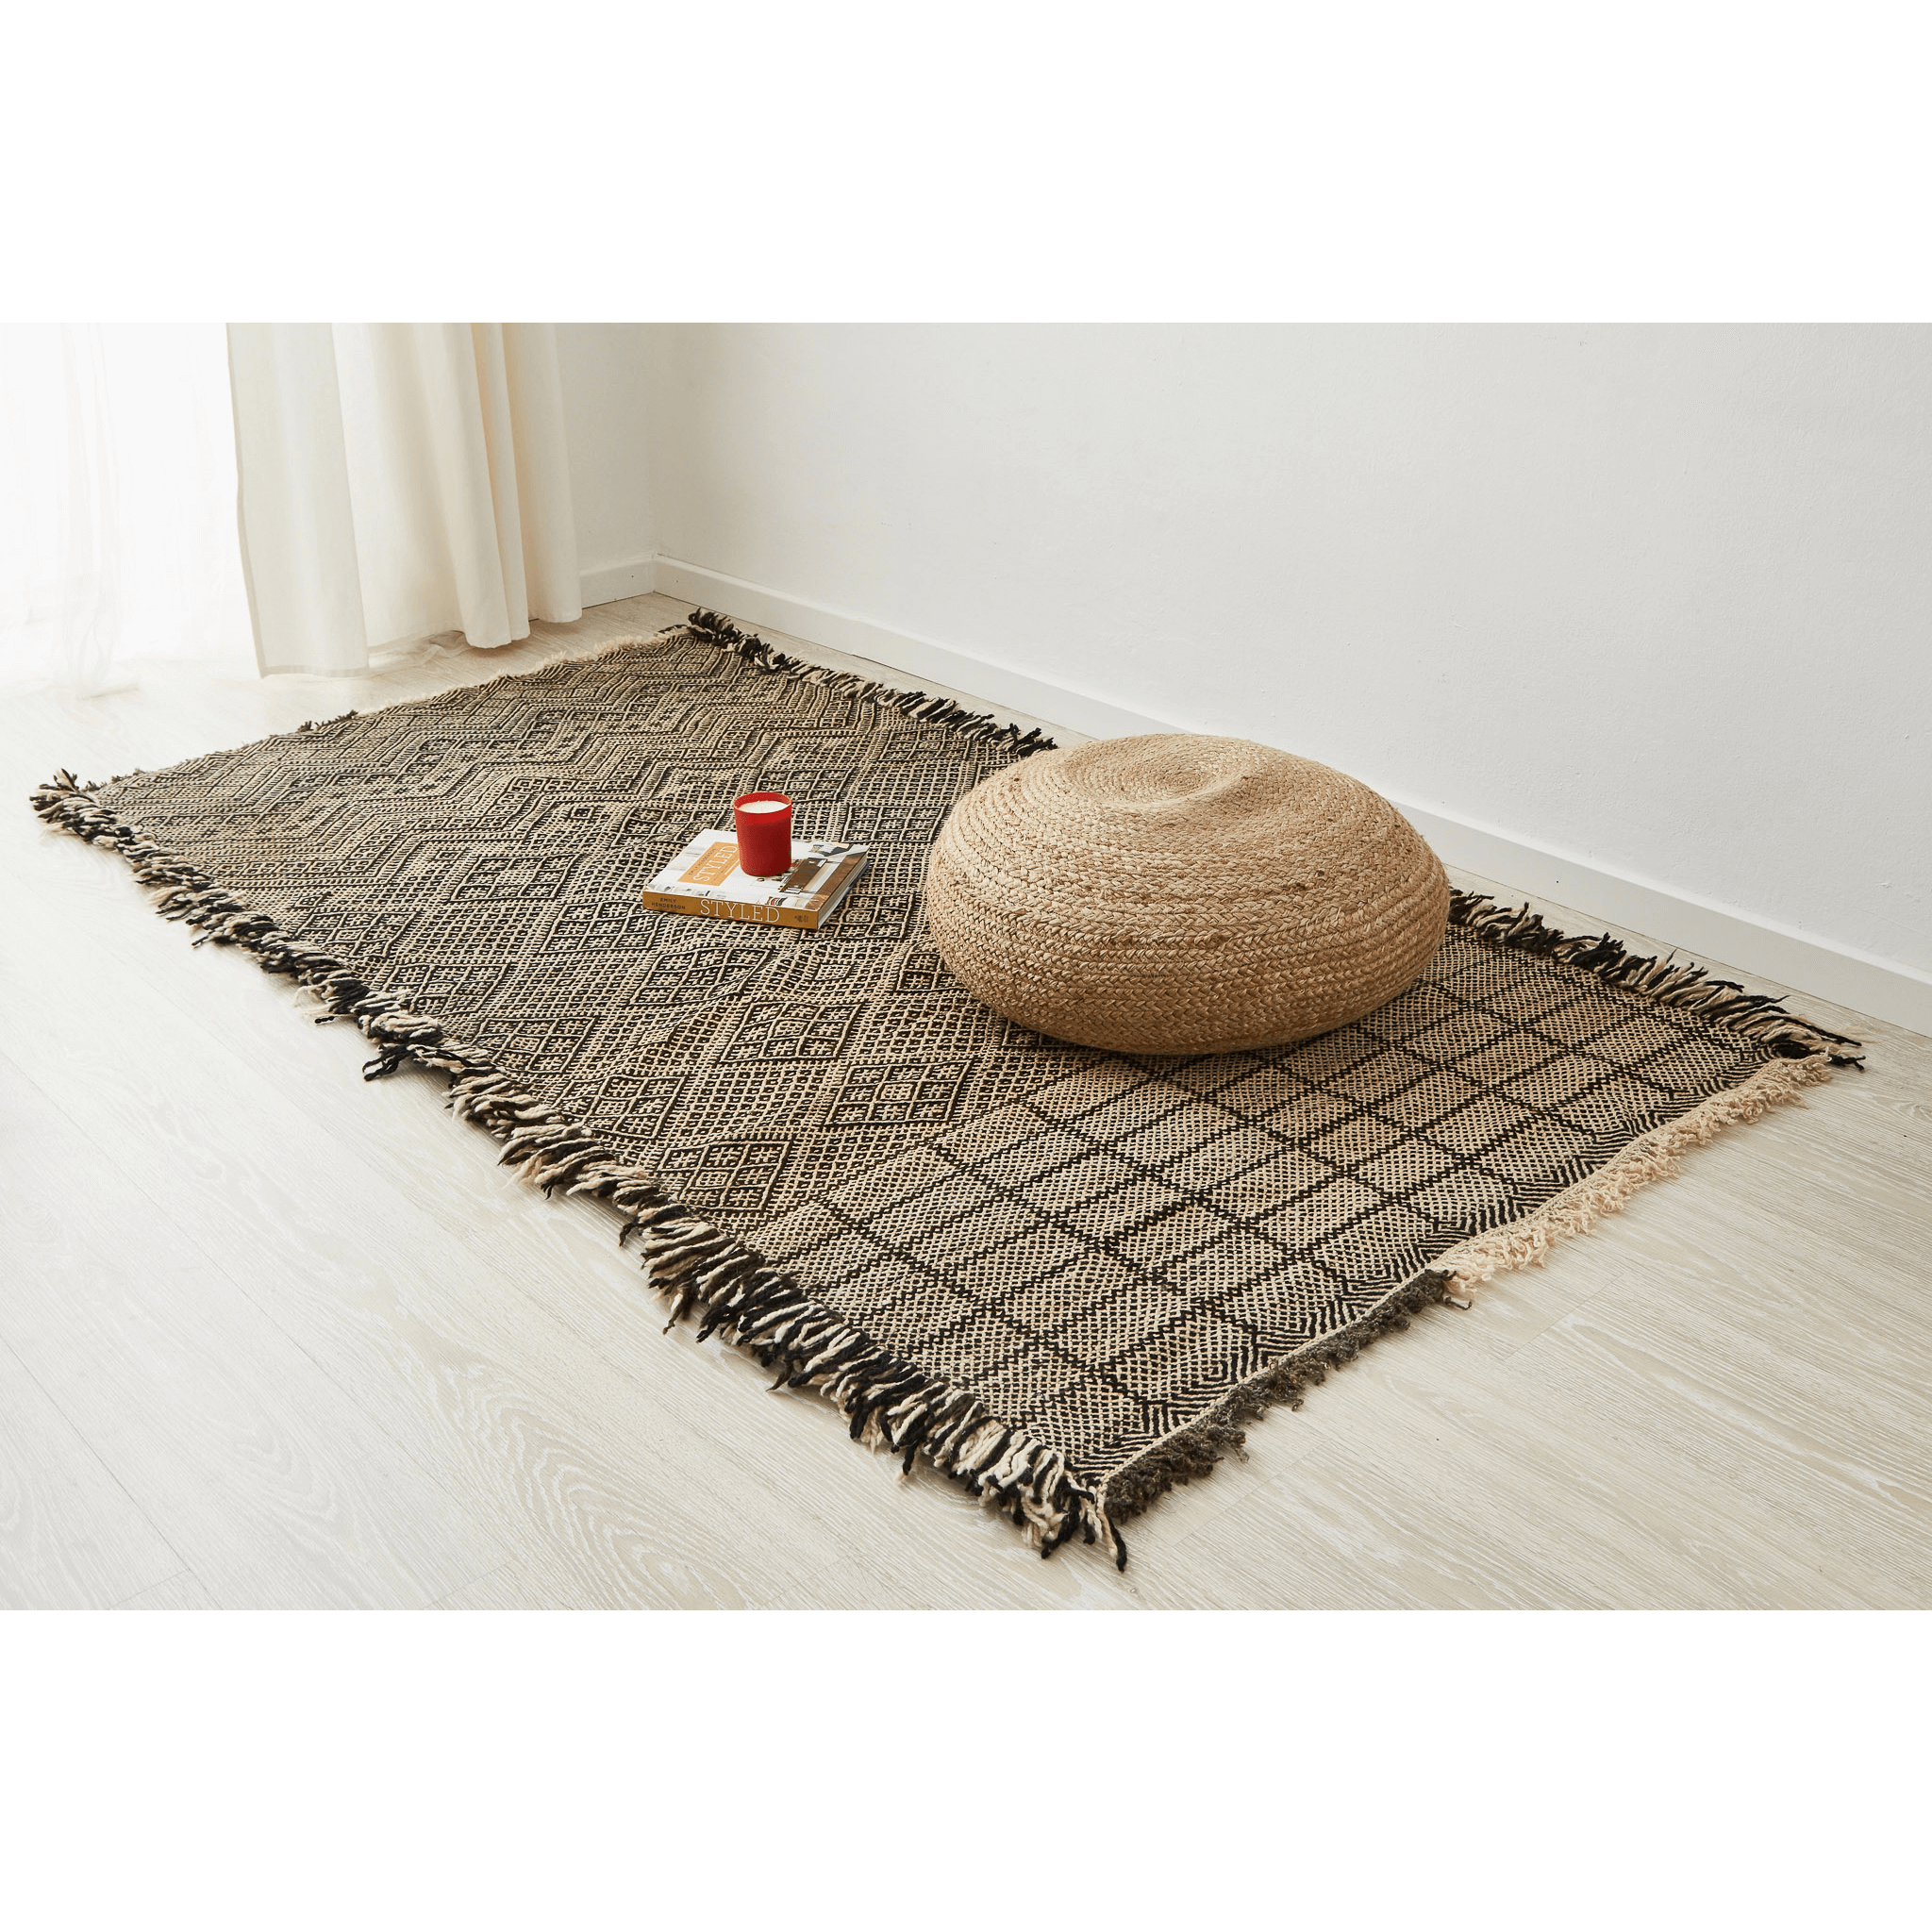 tappeto zanafi di taznakht a tessitura piatta di colore crema e nero con frange su tutti i lati disteso sul pavimento